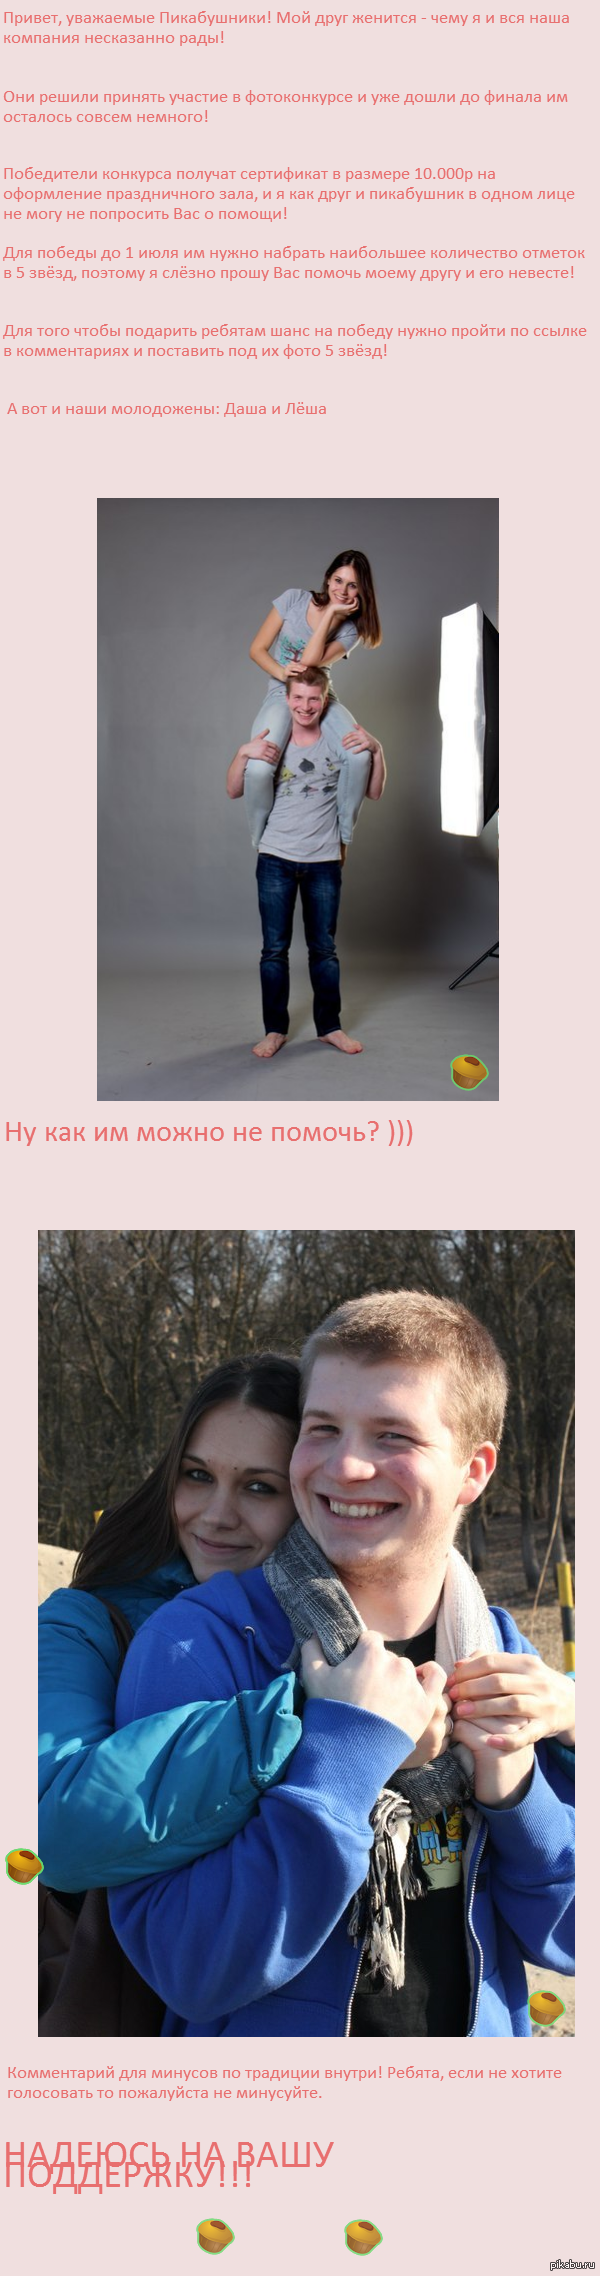 , !) http://chemodanproject.ru/by-chemodan/sovmestno-s/sobyitiya-chemodan-tvorcheskoe-atele-priz-na-10-000-rub-4185/